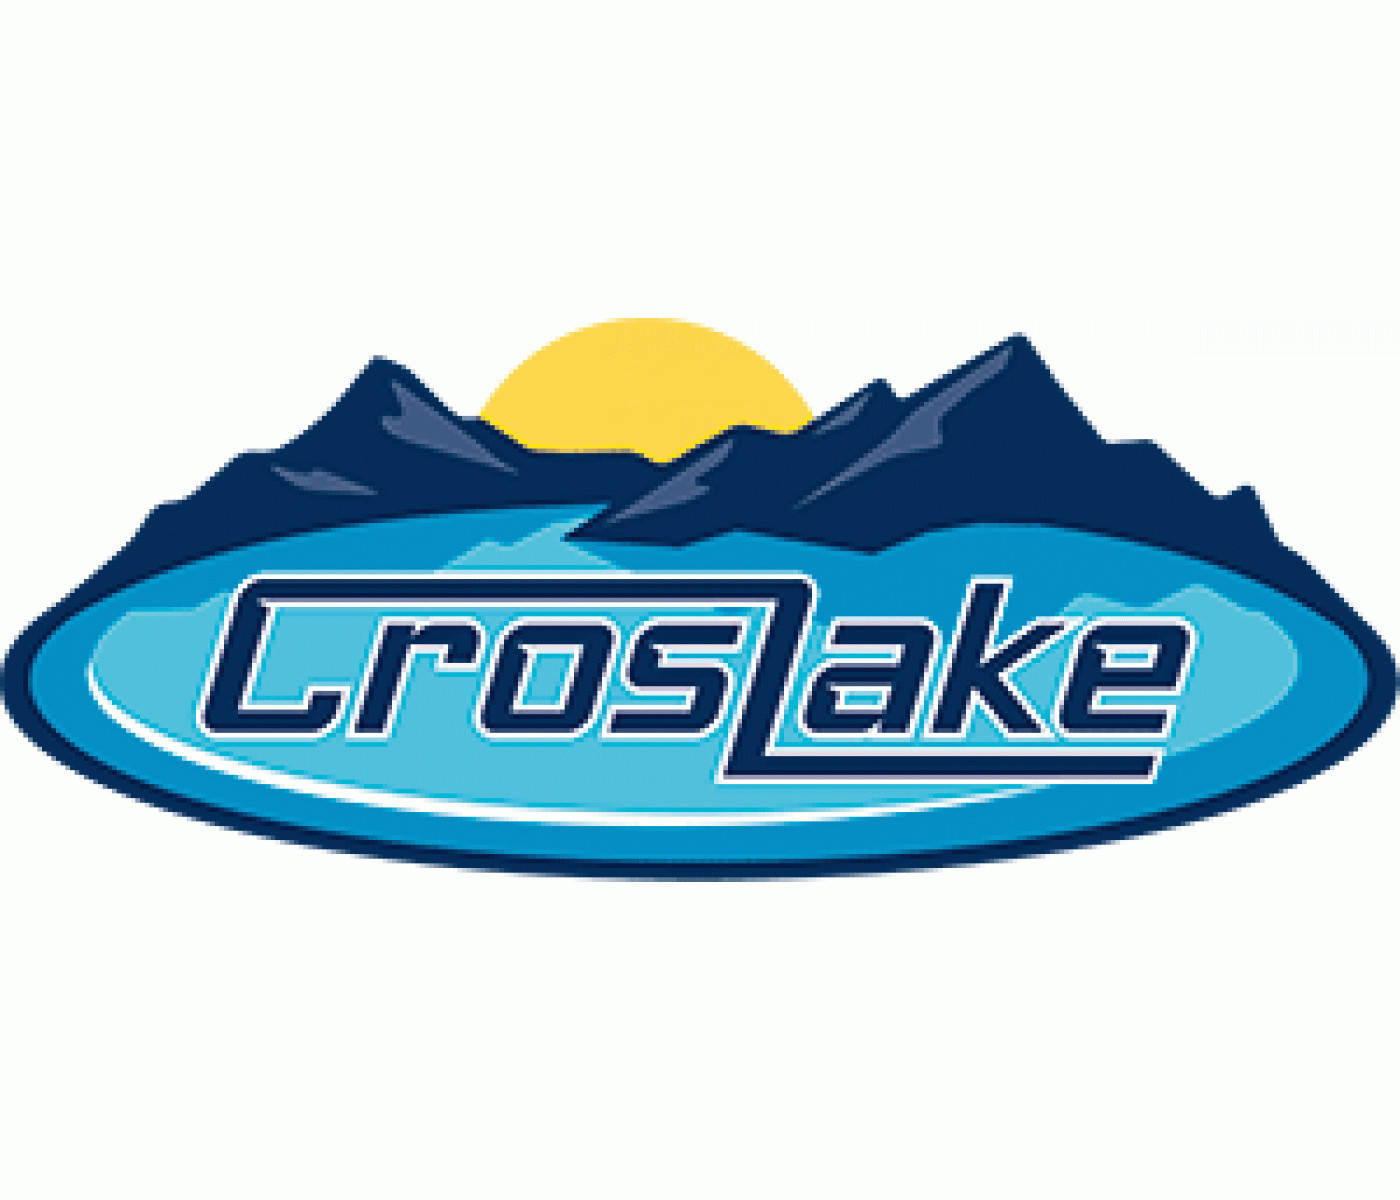 CrosLake